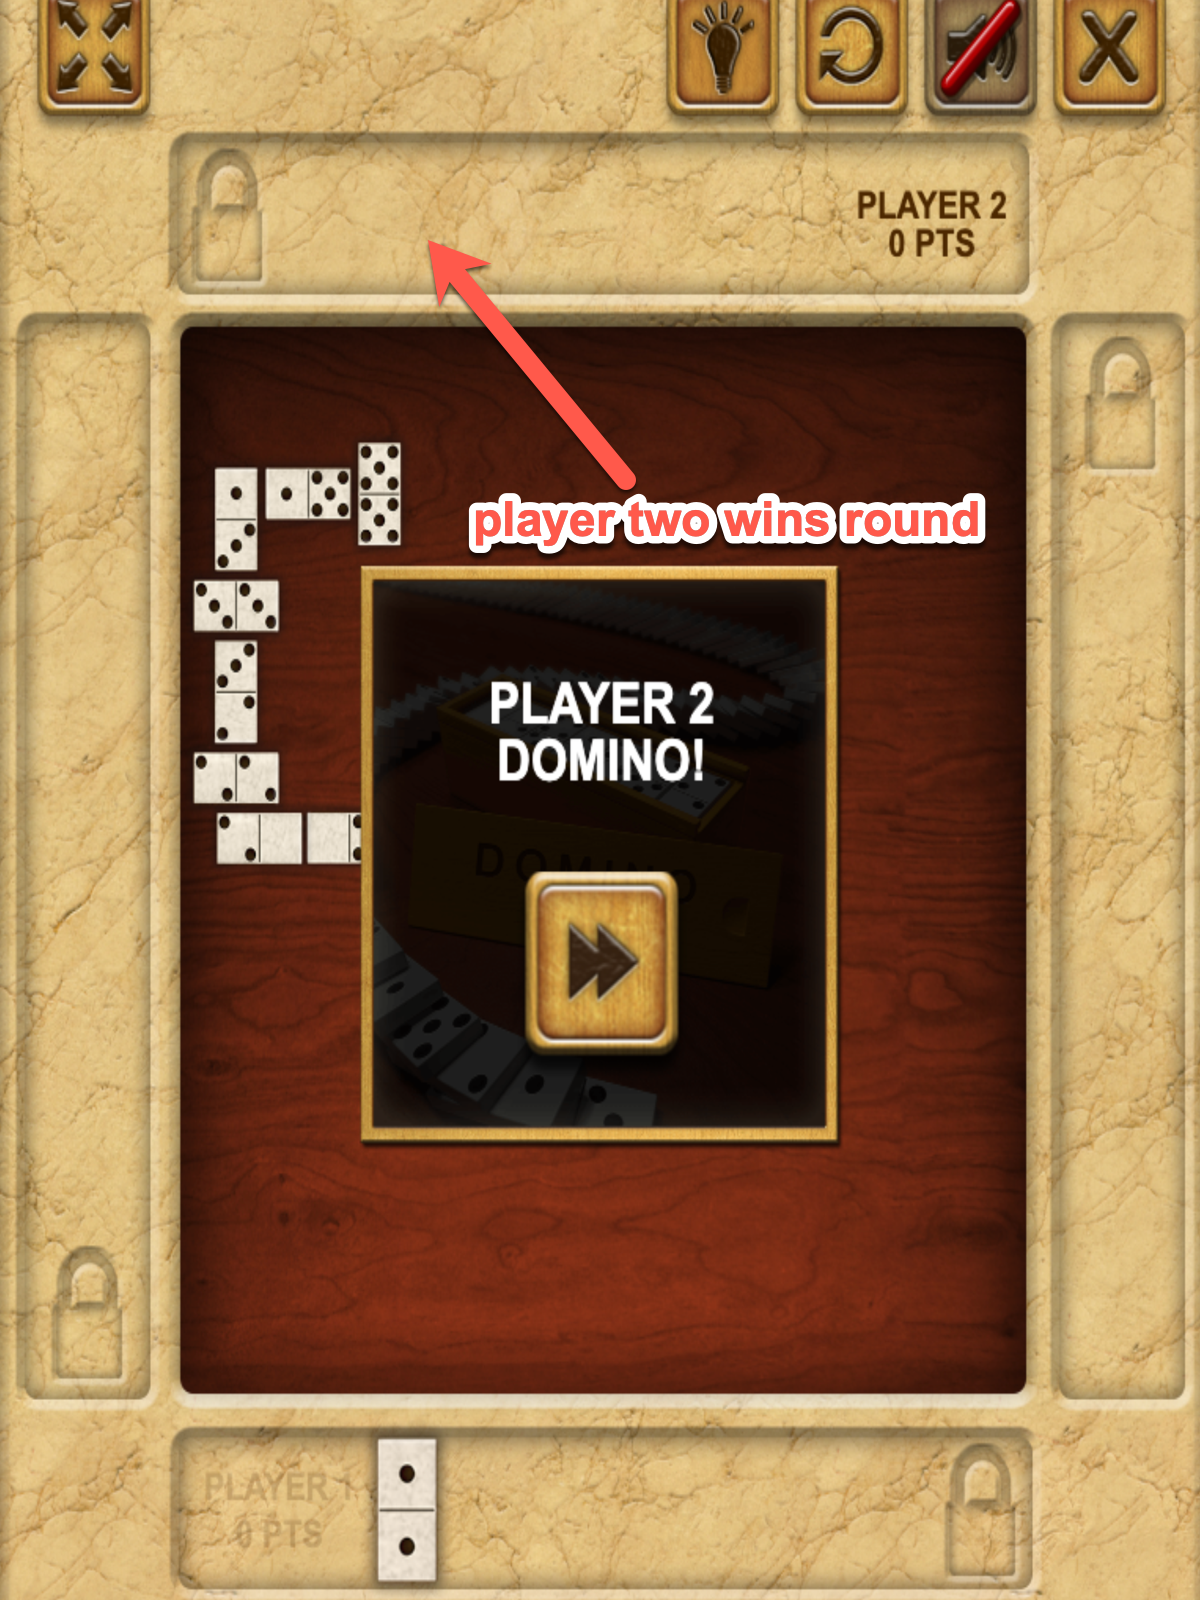 Domino Block Game Wins Round Screenshot.